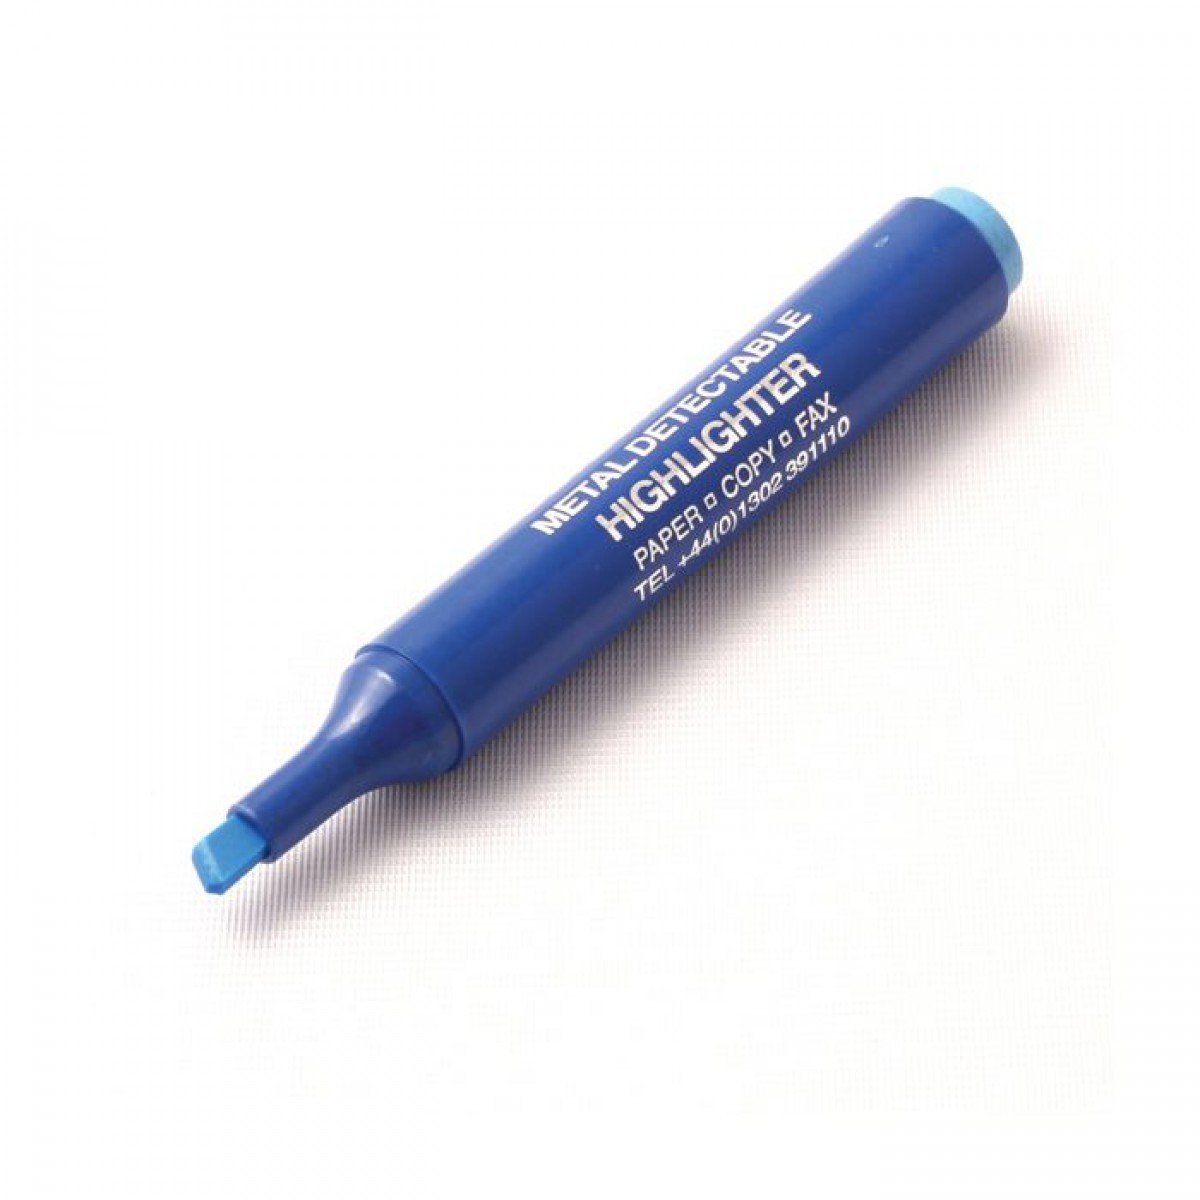 Detecta-Lite Highlighter Marker Pens